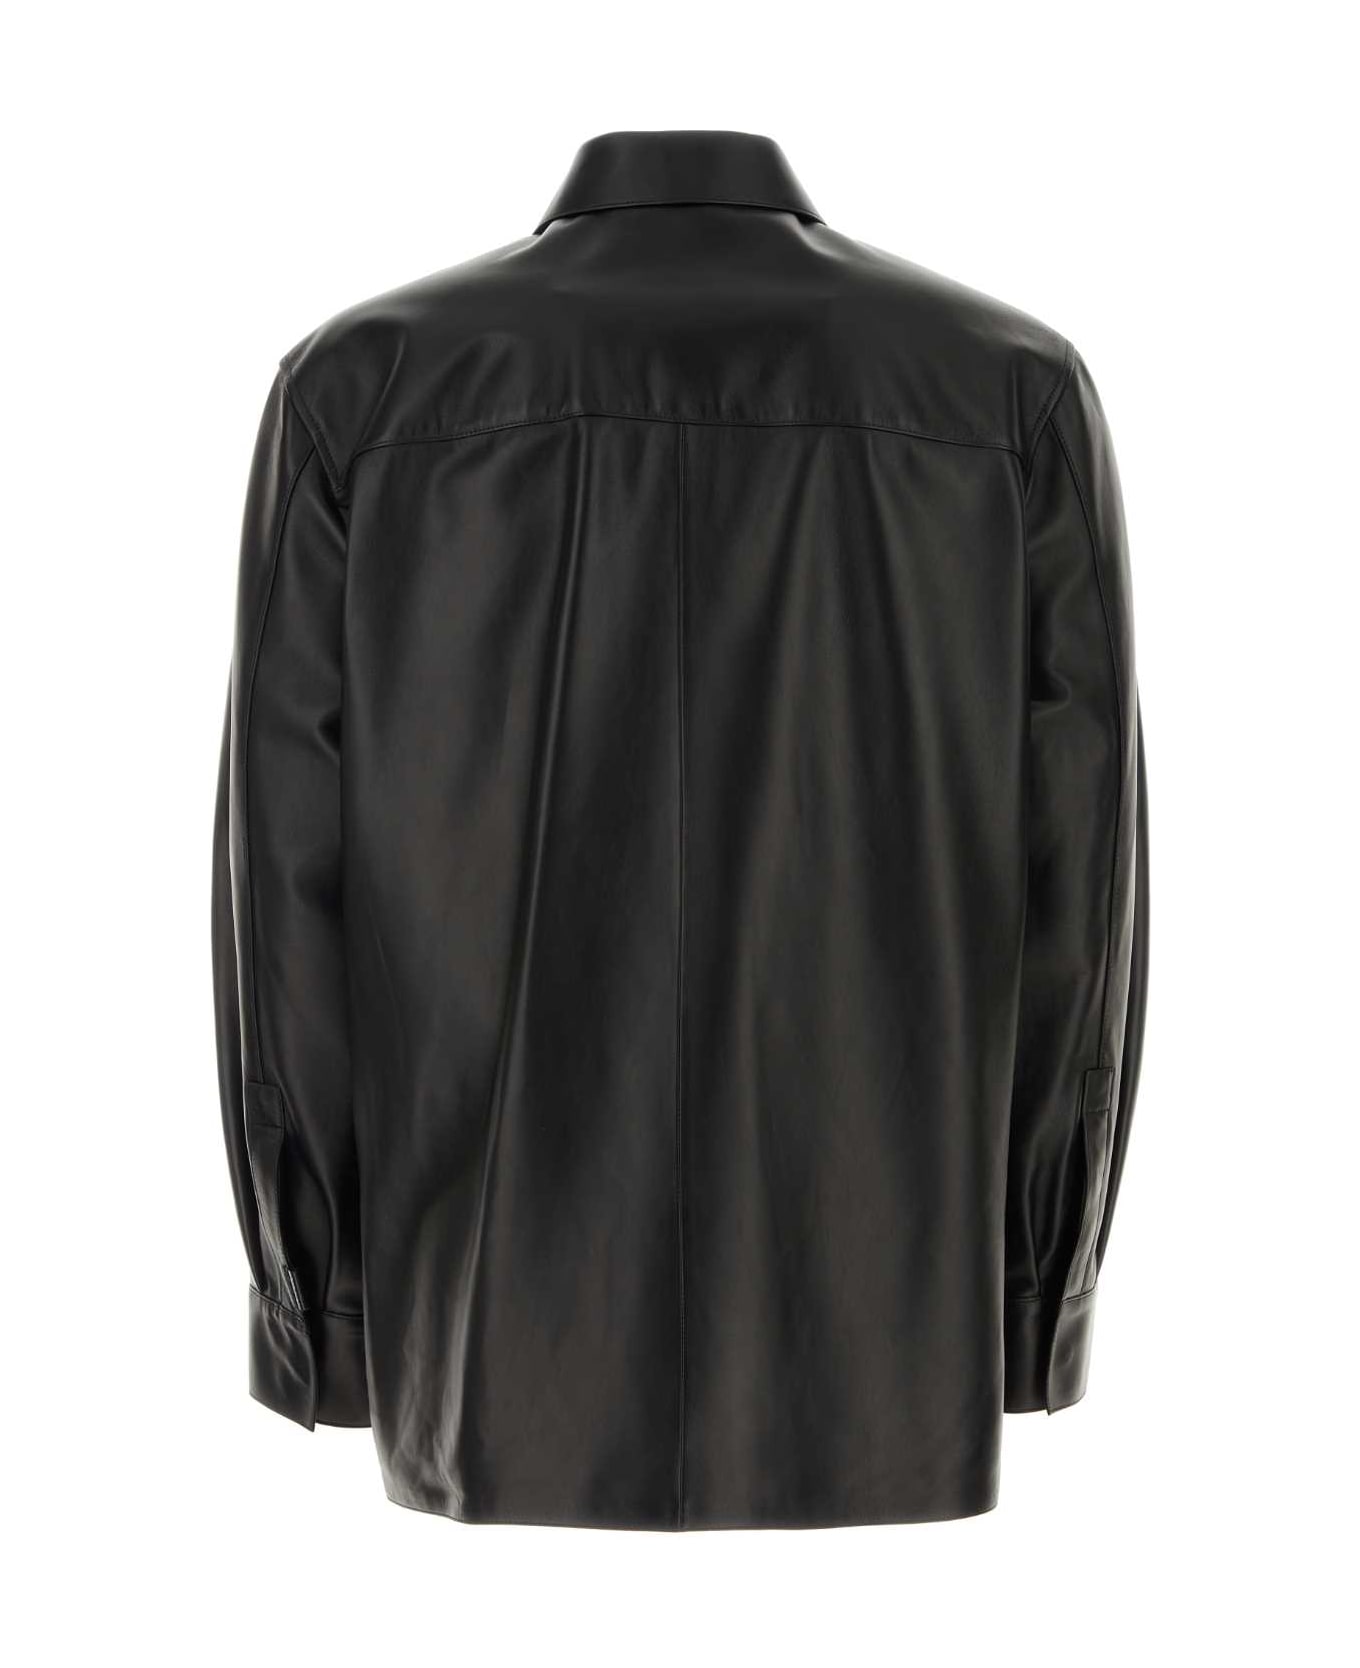 Loewe Black Leather Jacket - BLACK